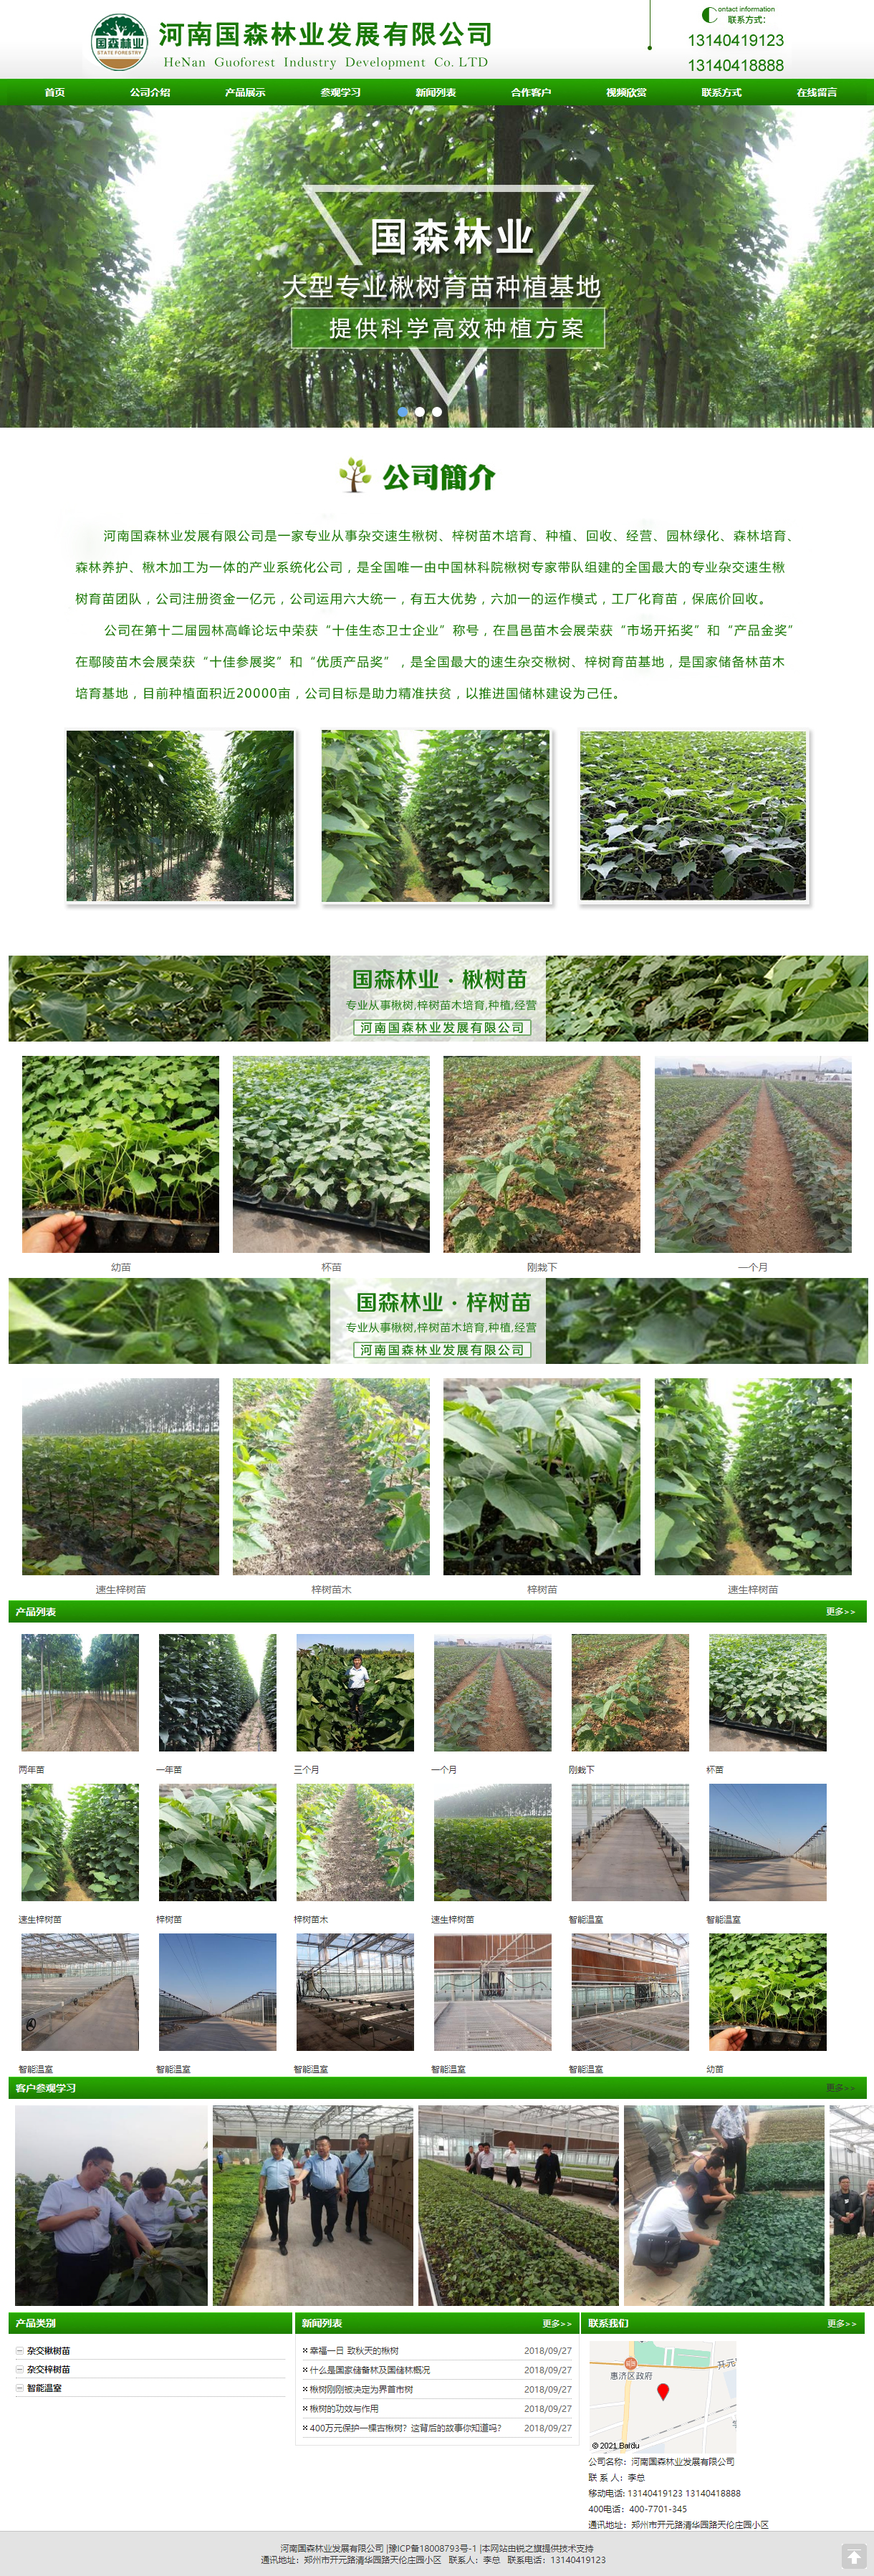 河南国森林业发展有限公司网站案例